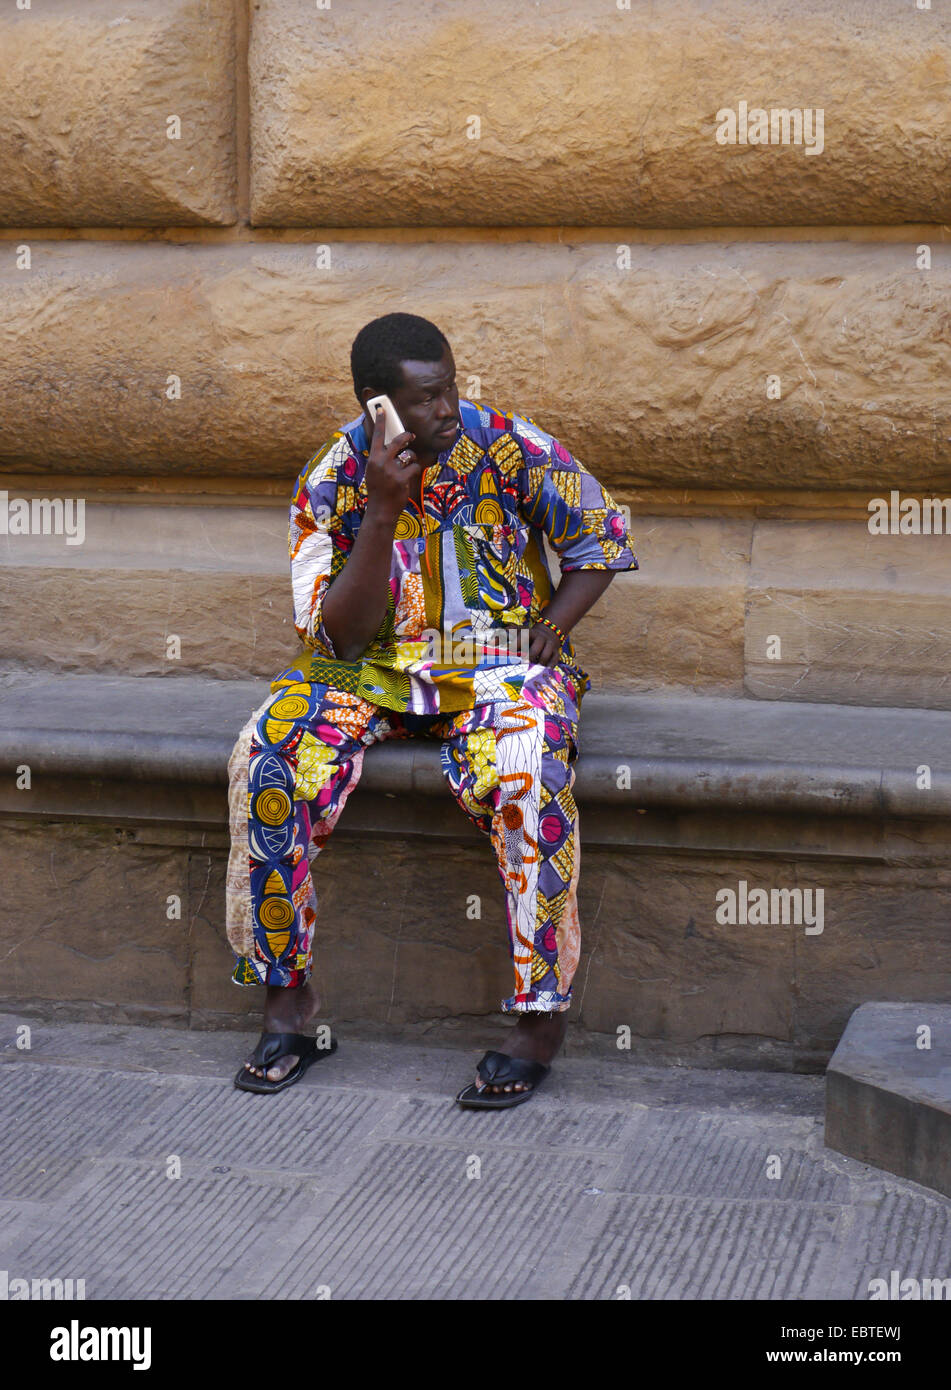 Un hombre afro-caribeño en un colorido traje de entramado sentado en un asiento de piedra en Florencia, Italia, hablando por un teléfono móvil Foto de stock